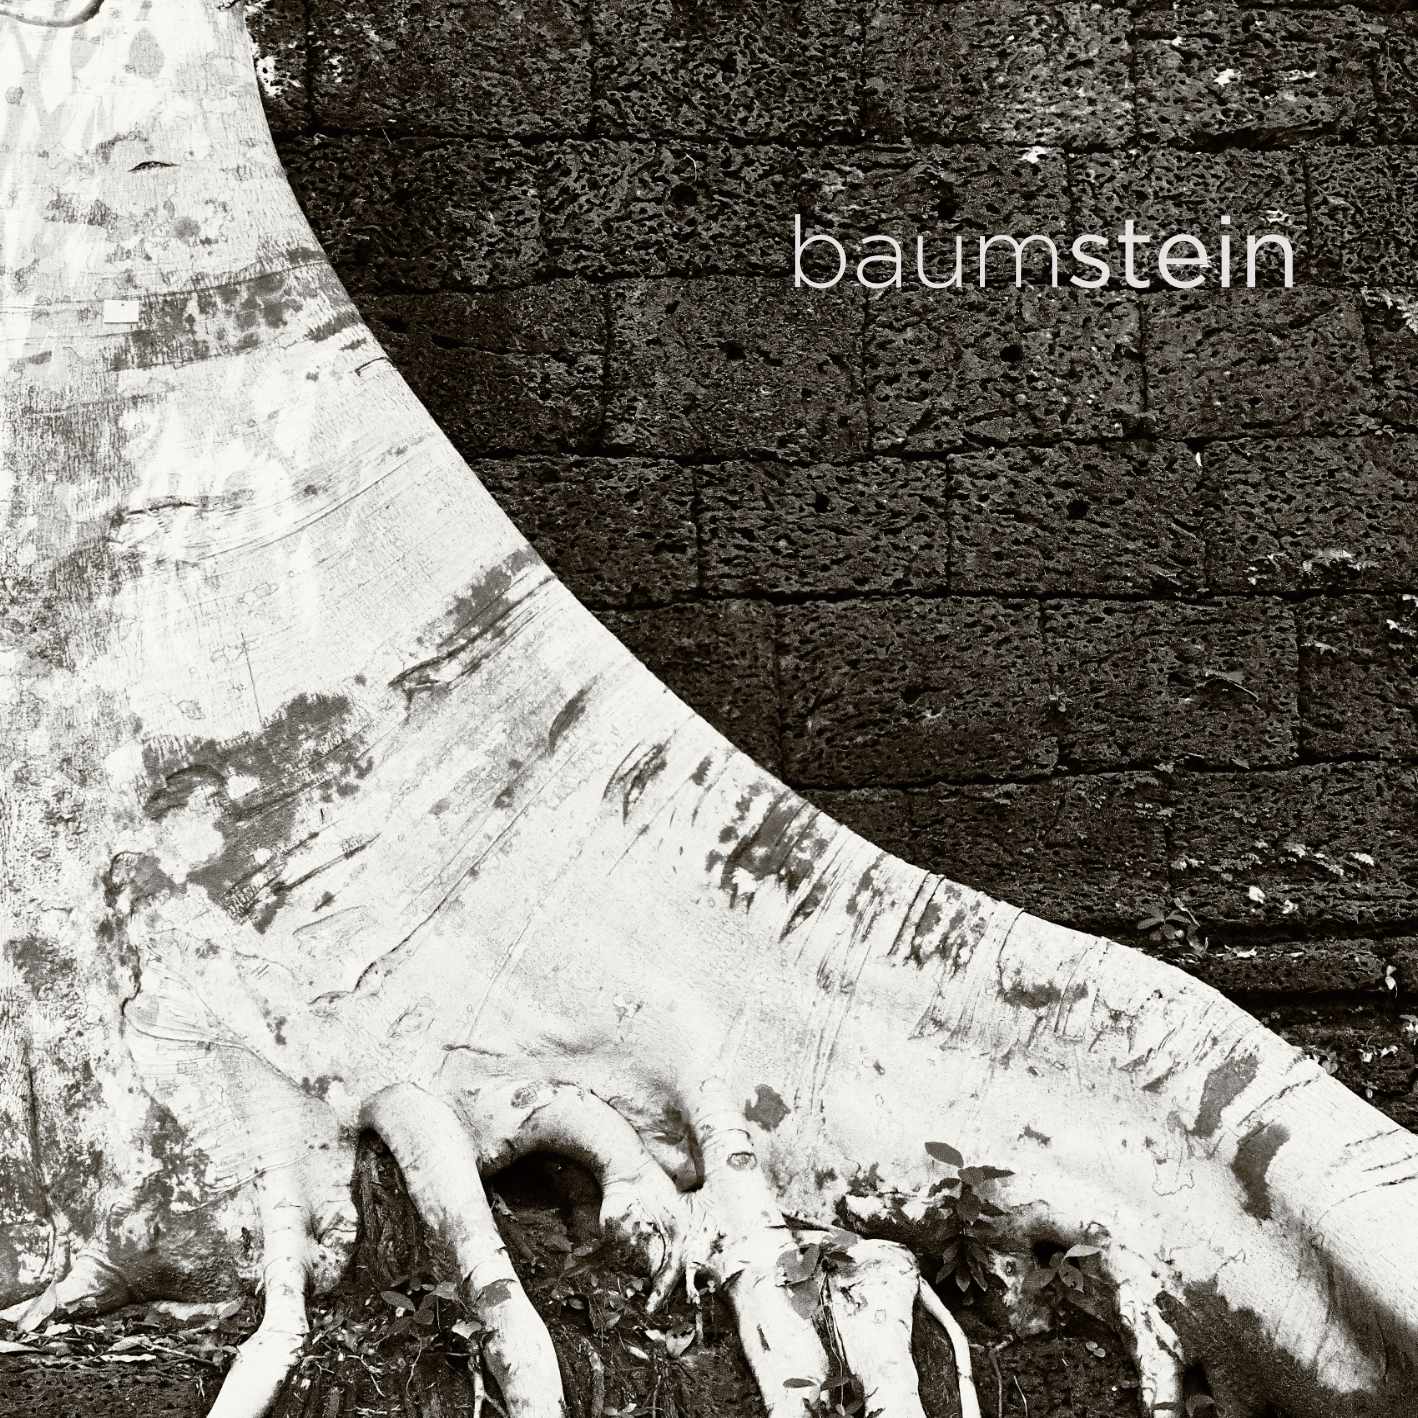 Baumstein